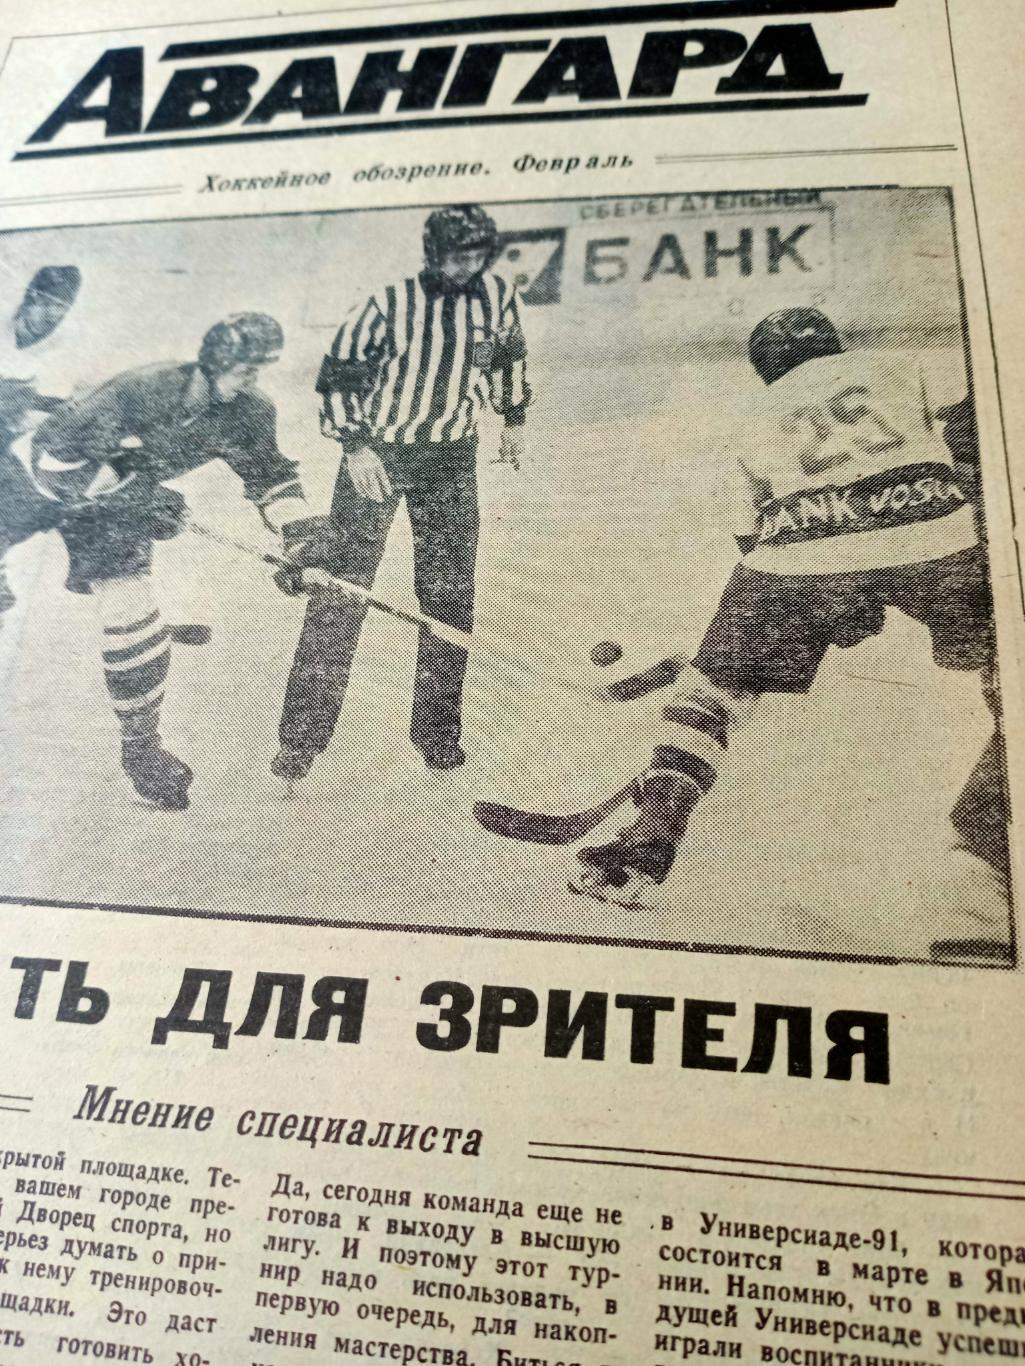 Авангард. Омск. Хоккейное обозрение. Февраль. 1991 год